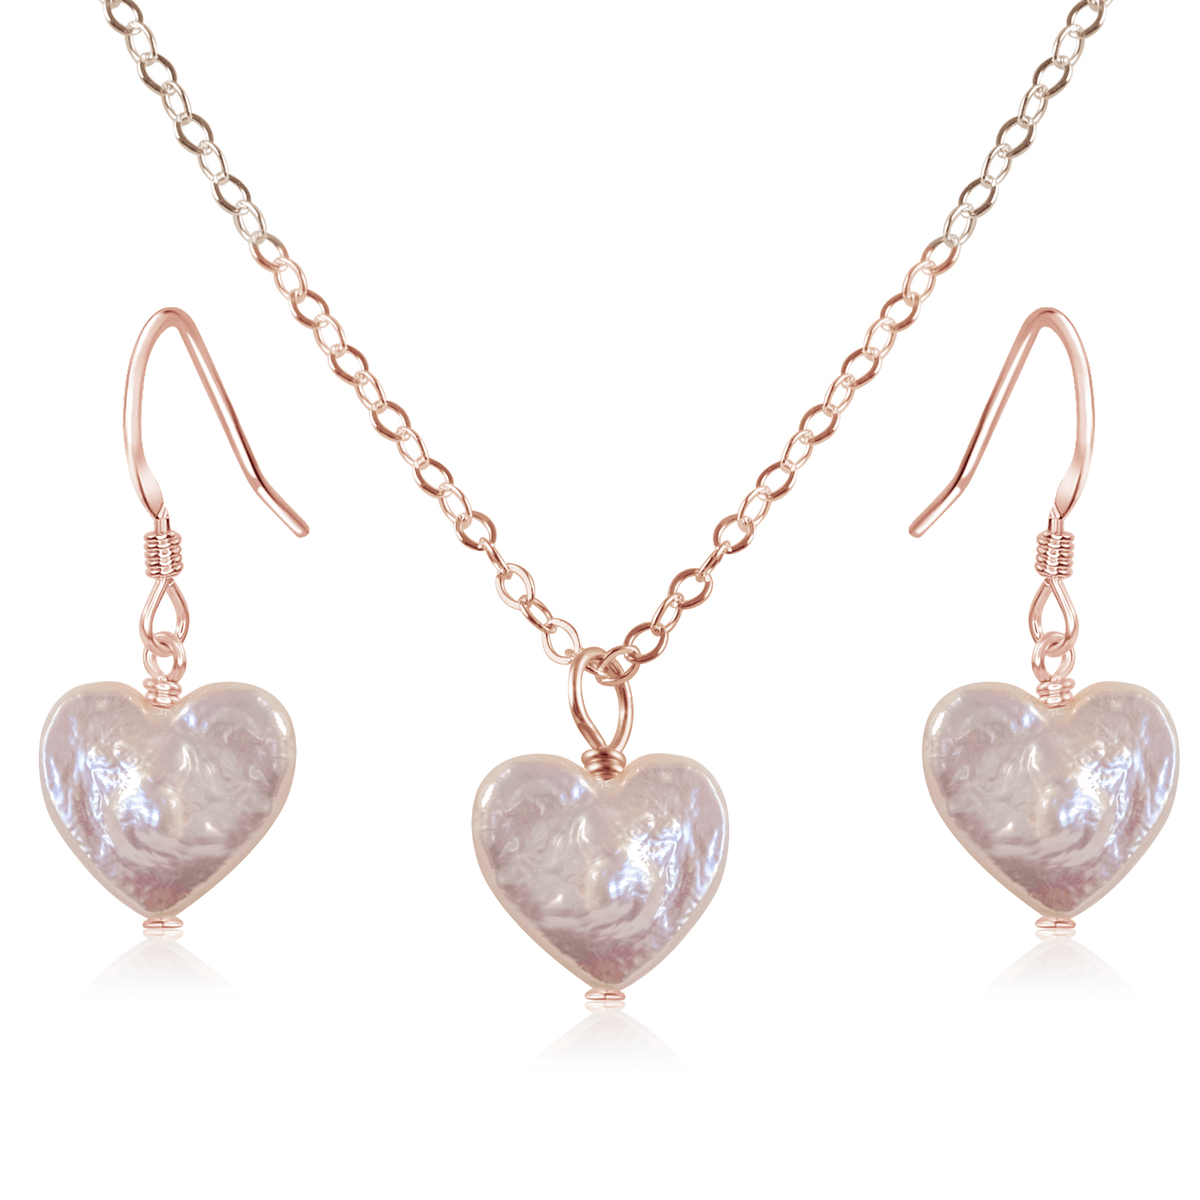 Freshwater Pearl Heart Jewellery Set - Freshwater Pearl Heart Jewellery Set - 14k Rose Gold Fill / Cable / Necklace & Earrings - Luna Tide Handmade Crystal Jewellery